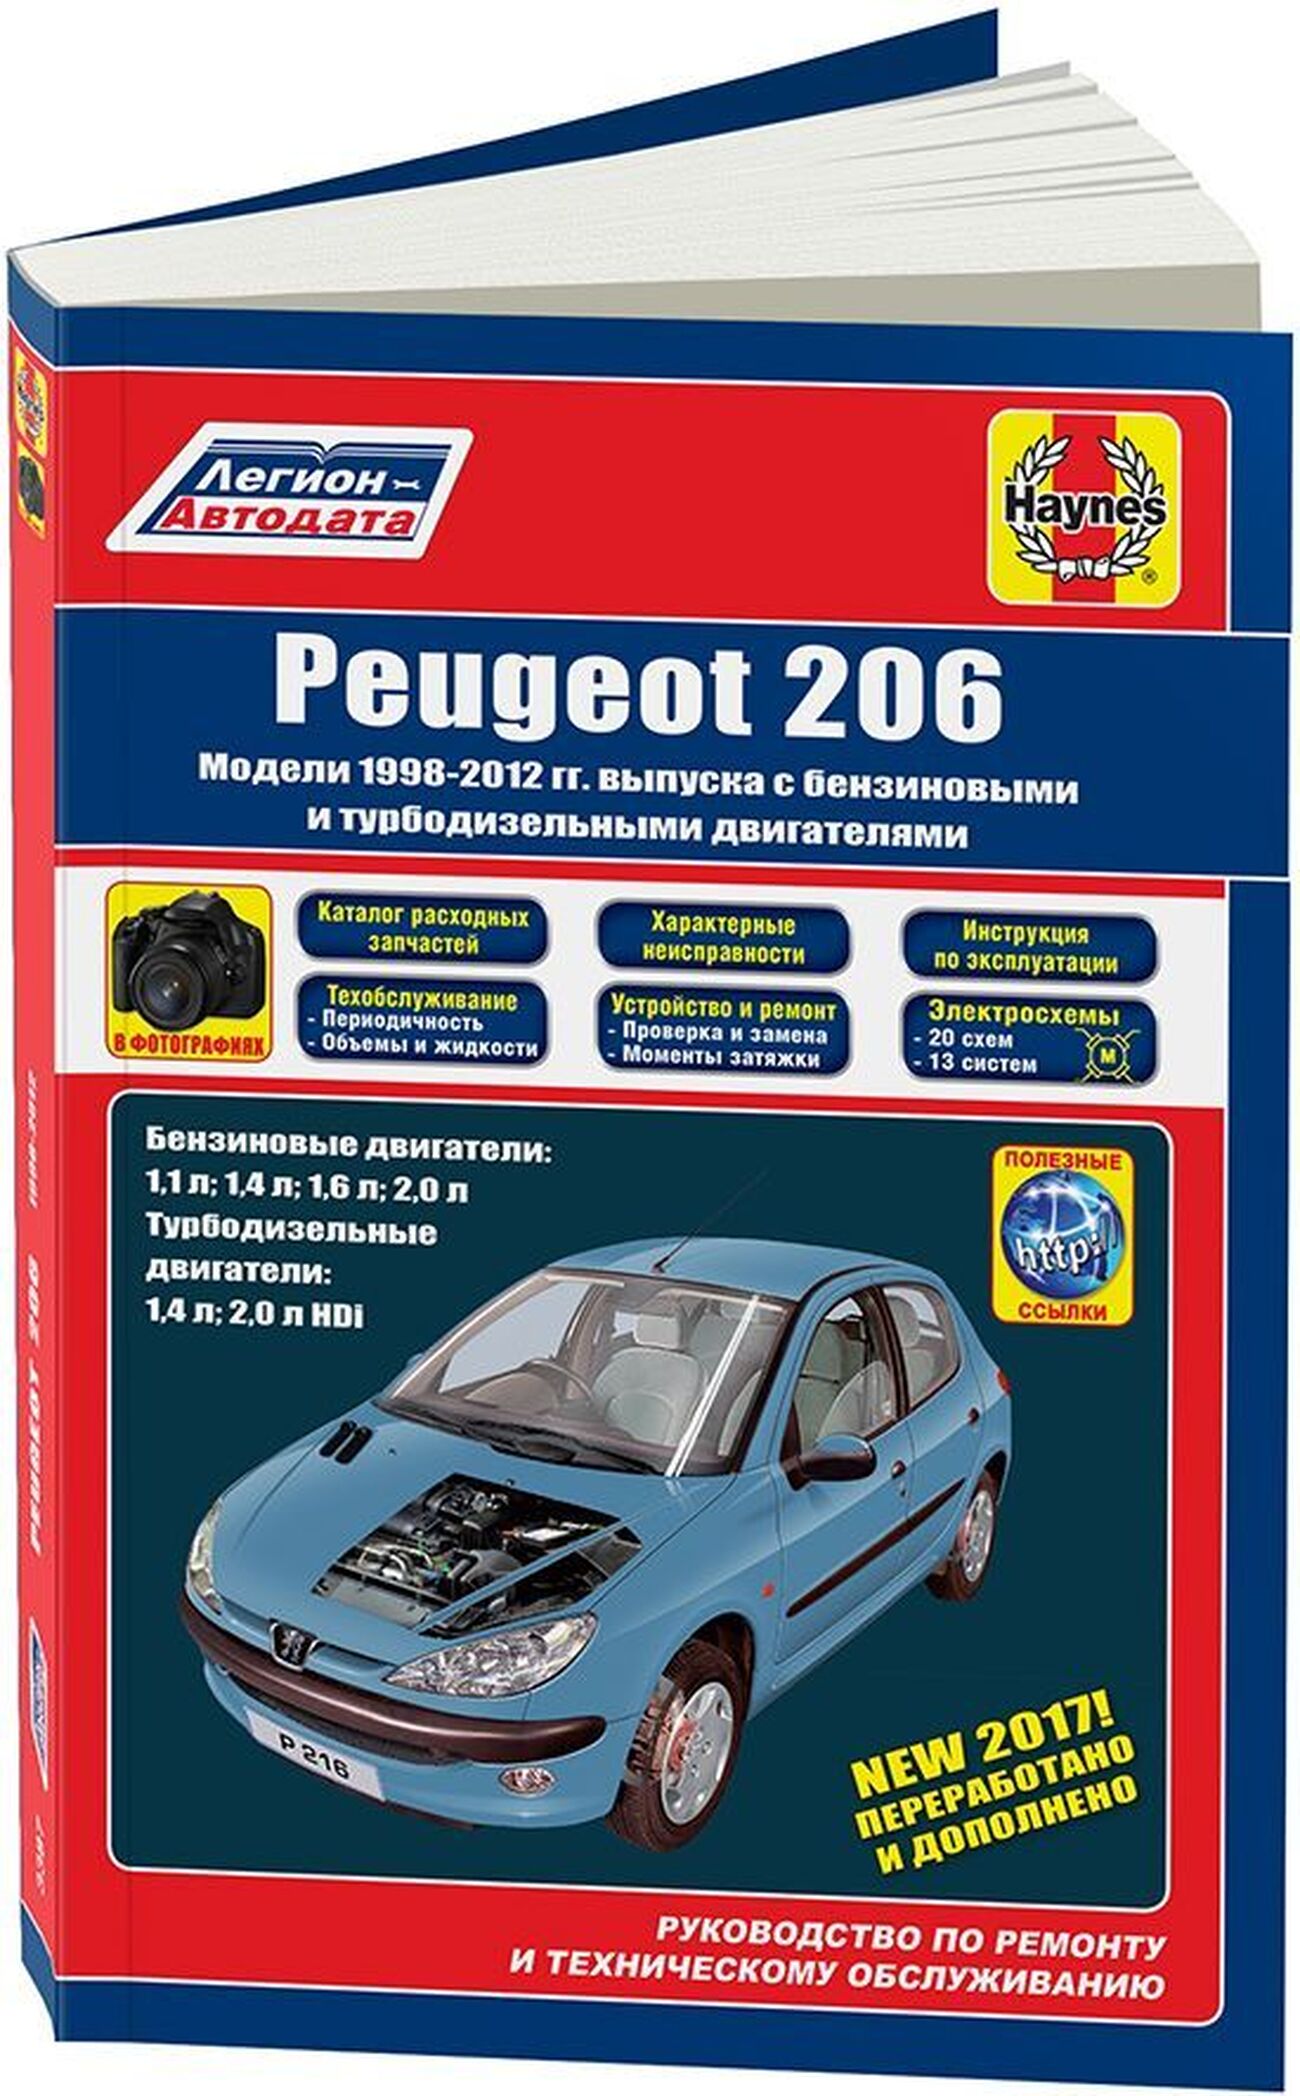 Книга: PEUGEOT 206 (б , д) 1998-2012 г.в., рем., экспл., то | Легион-Автодата